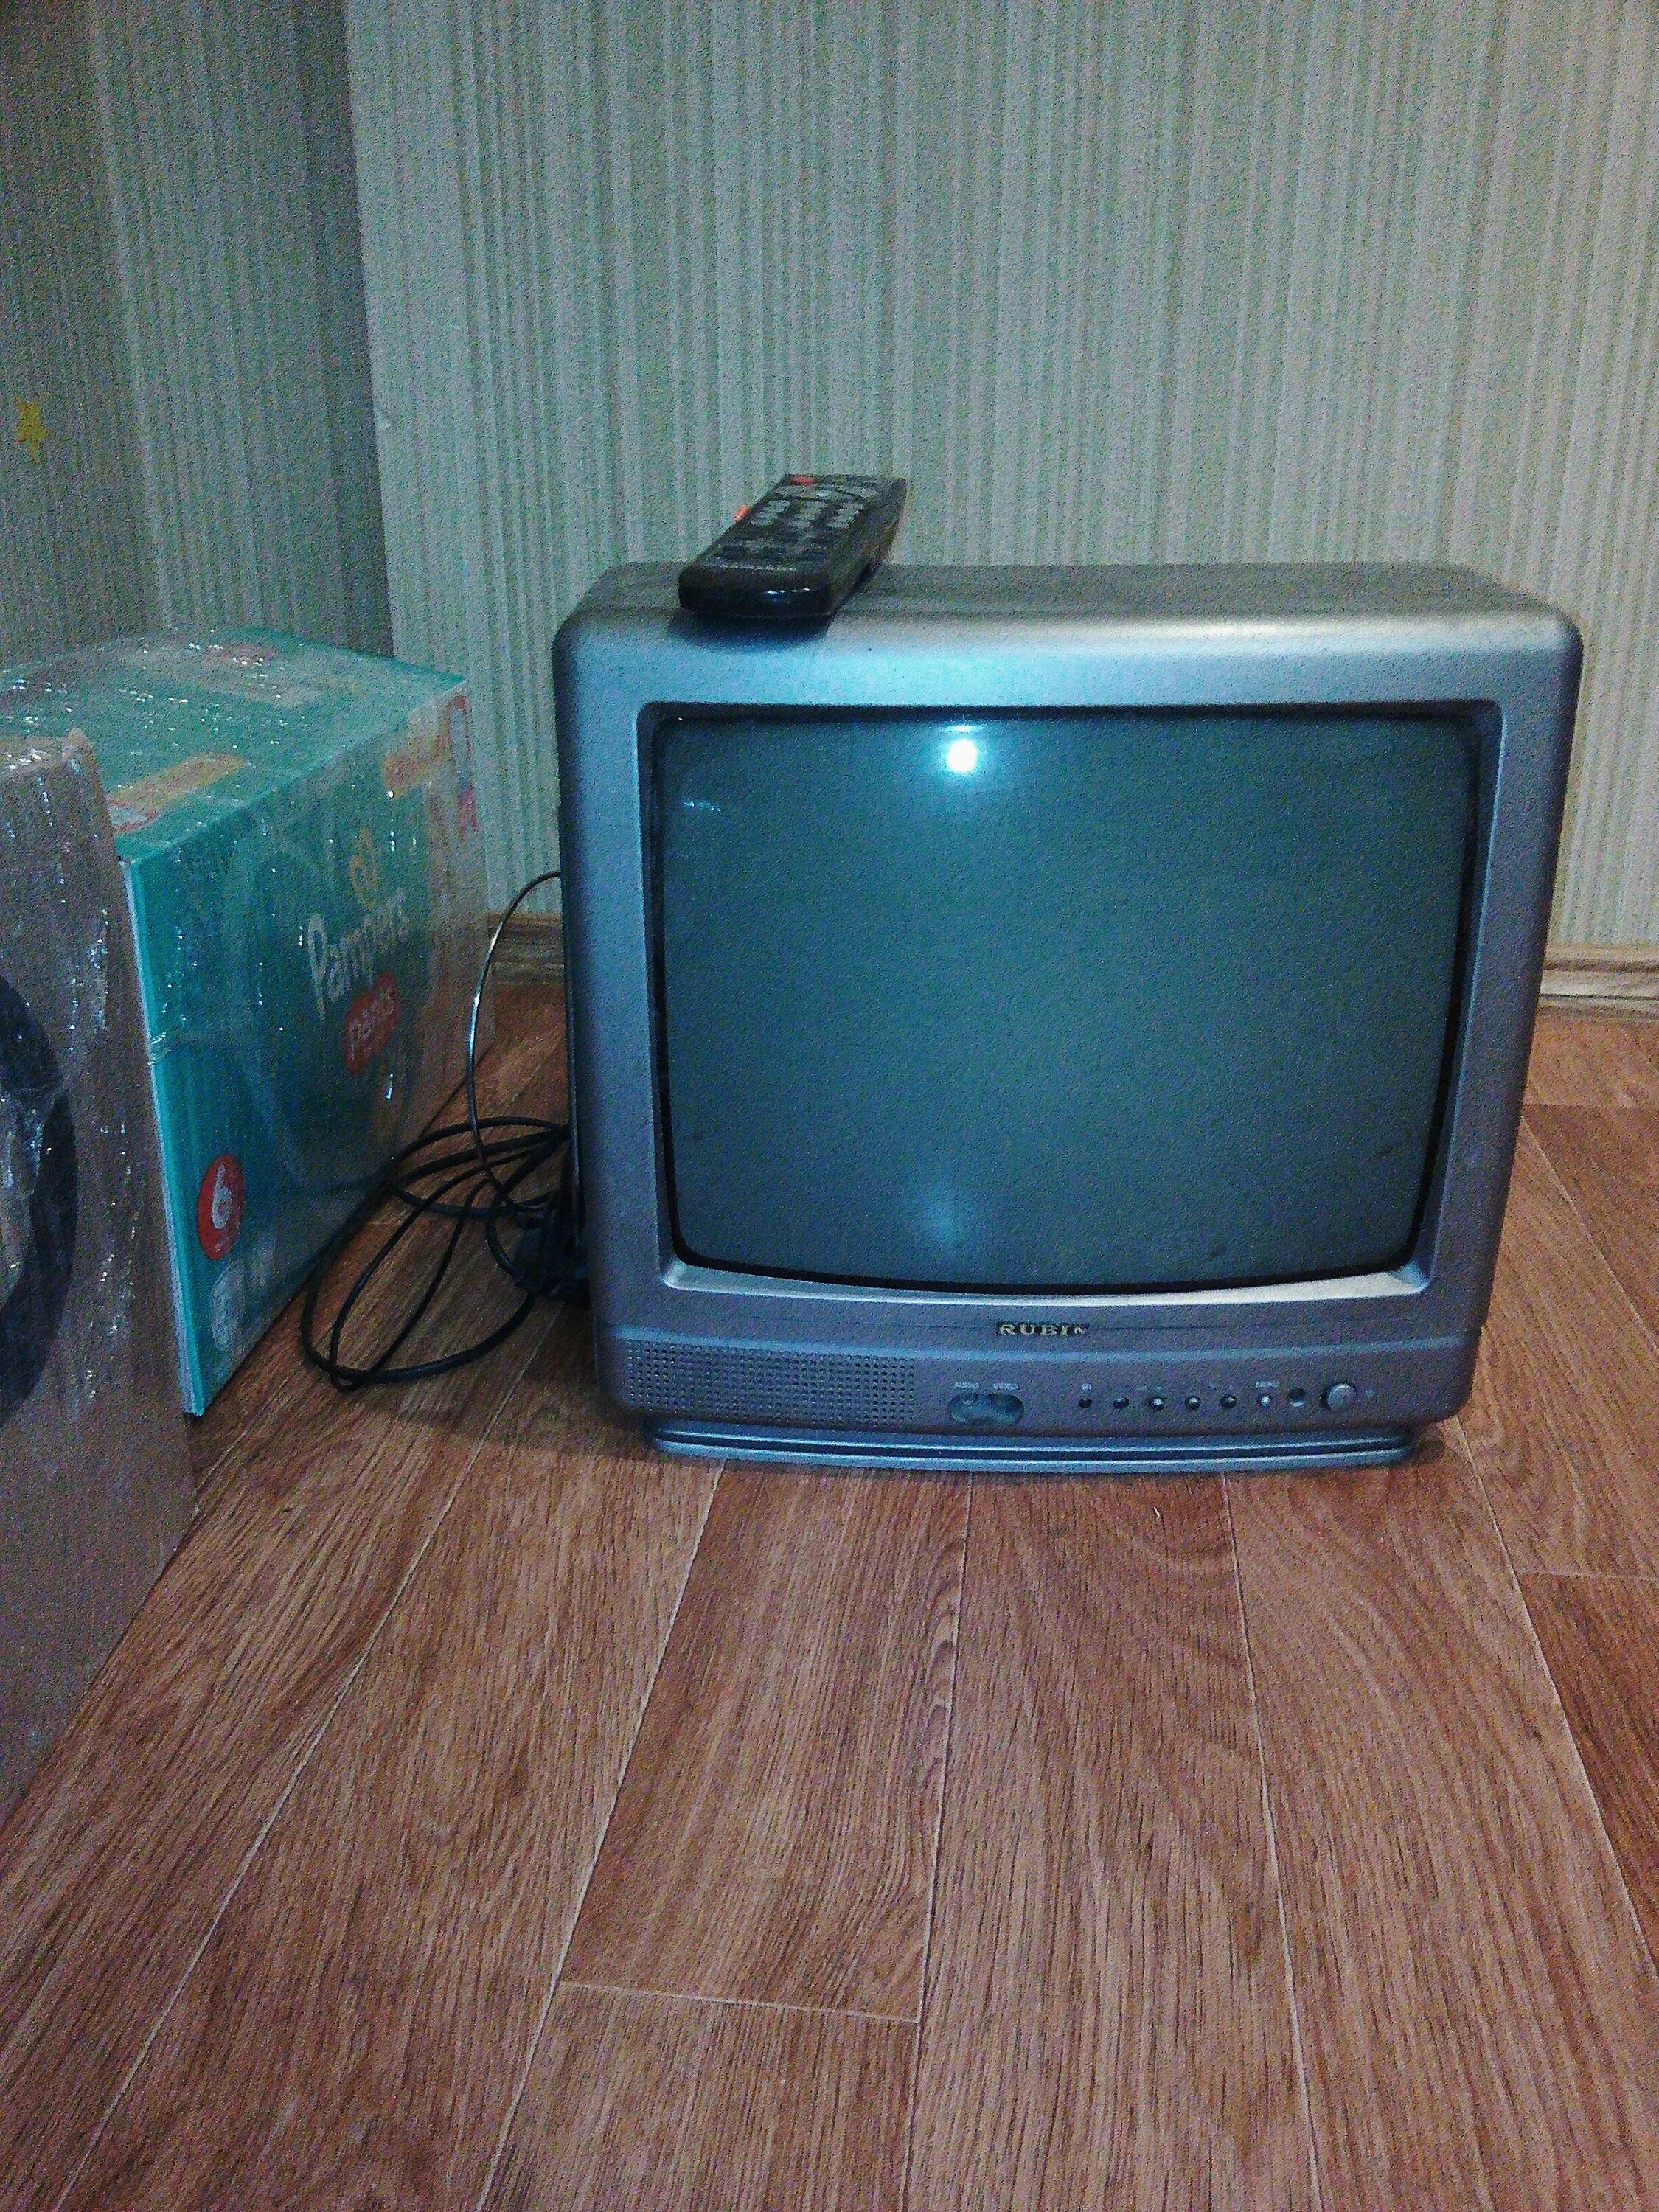 Куплю ламповый телевизор. CK-5081zr ламповый телевизор. GOLDSTAR ламповый телевизор разъёмы. Маленький ламповый телевизор. Ламповый мини телевизор.